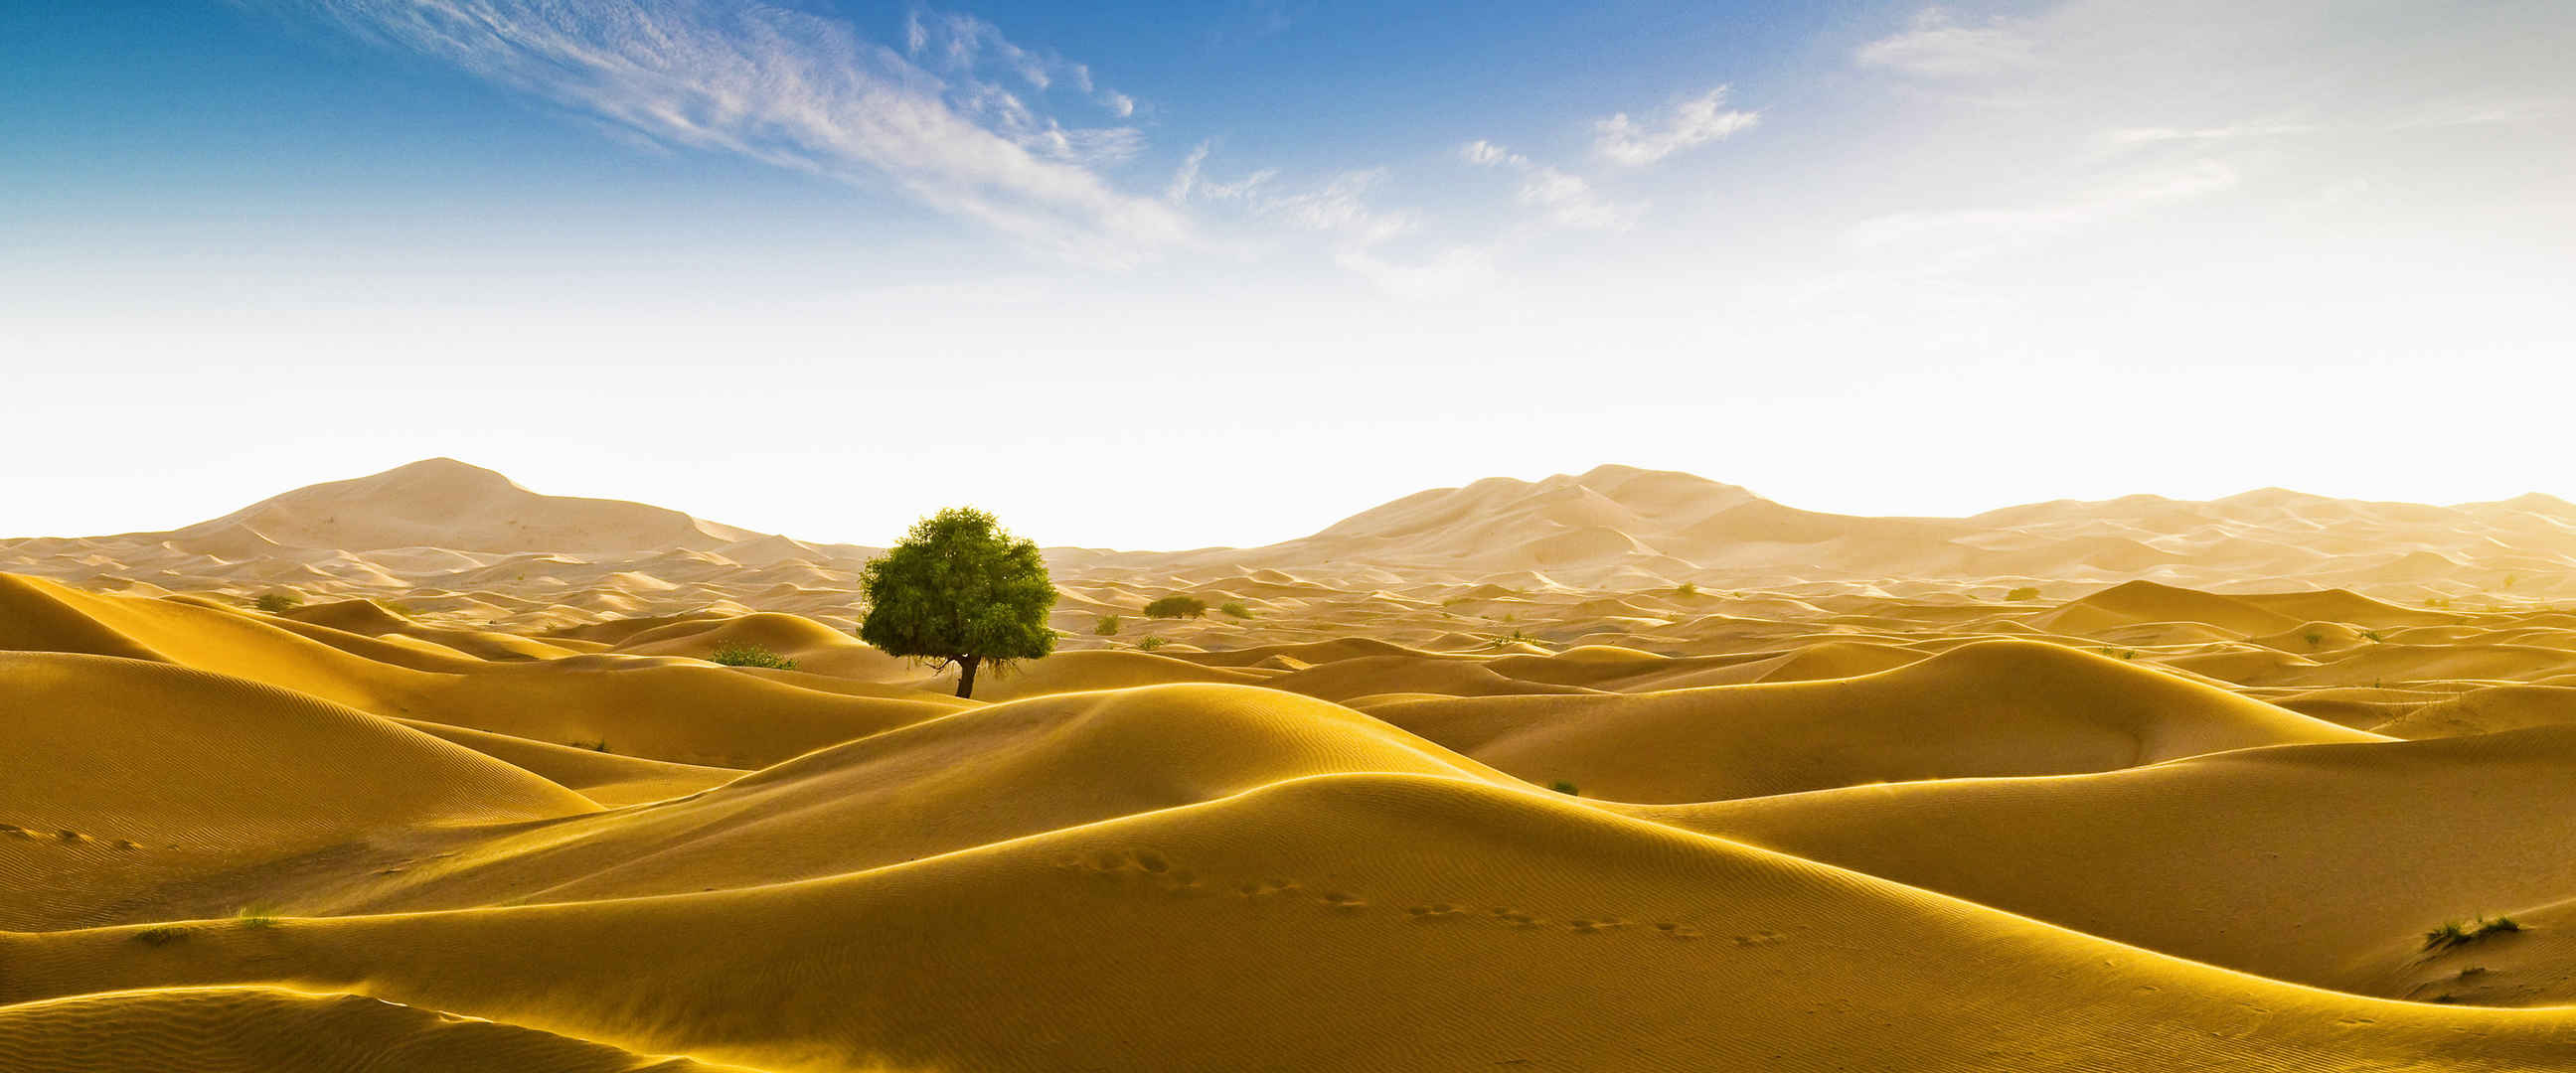 沙漠孤独树壁纸-